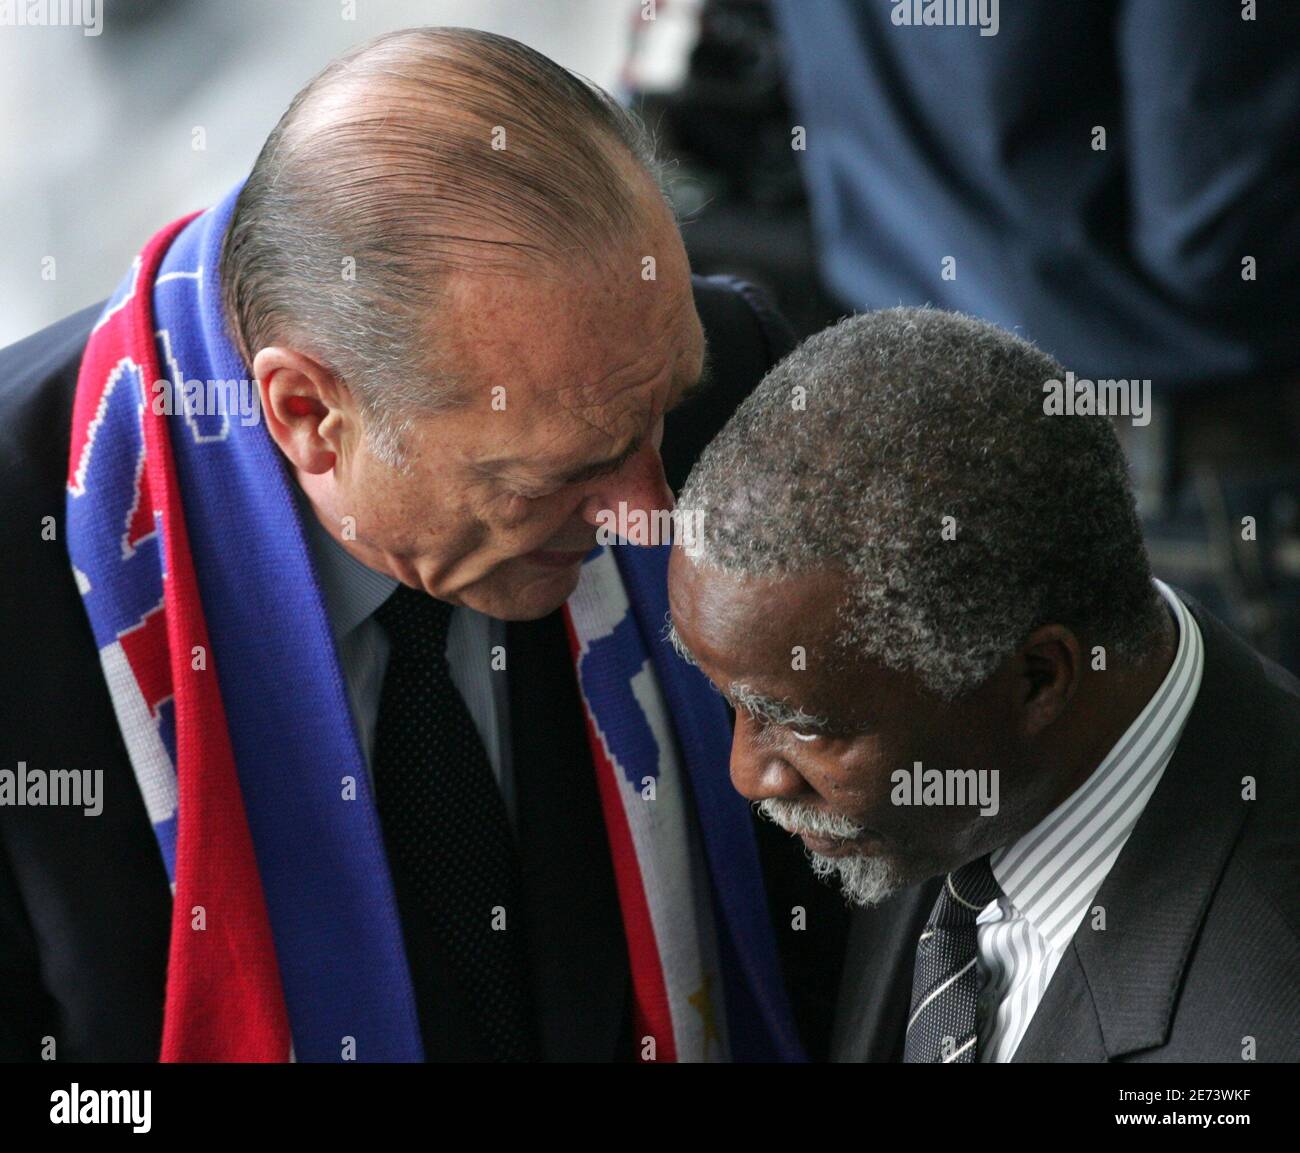 Il presidente francese Jacques Chirac (L) parla con il presidente sudafricano Thabo Mbeki prima della partita di calcio finale della Coppa del mondo 2006 tra Italia e Francia a Berlino il 9 luglio 2006. RESTRIZIONE FIFA - NESSUN UTILIZZO MOBILE REUTERS/ALESSANDRO BIANCHI (GERMANIA) Foto Stock